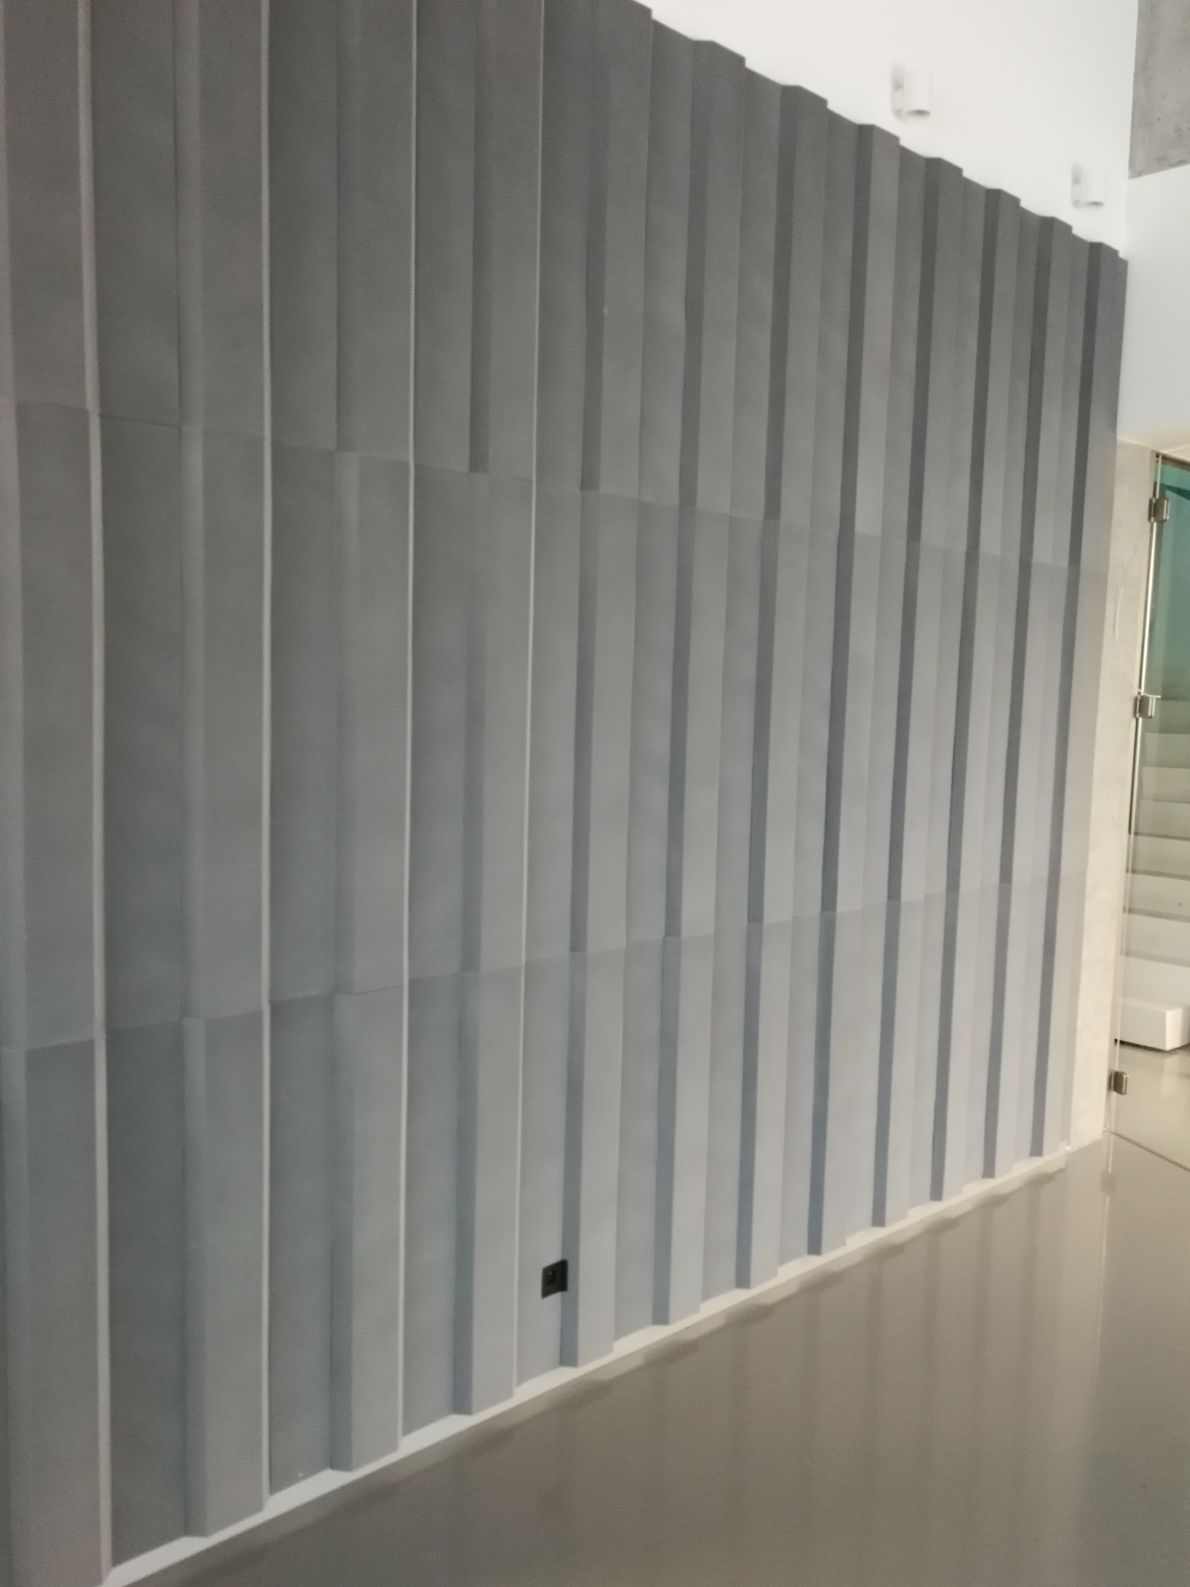 okładzina akustyczna ściany w biurowym korytarzu